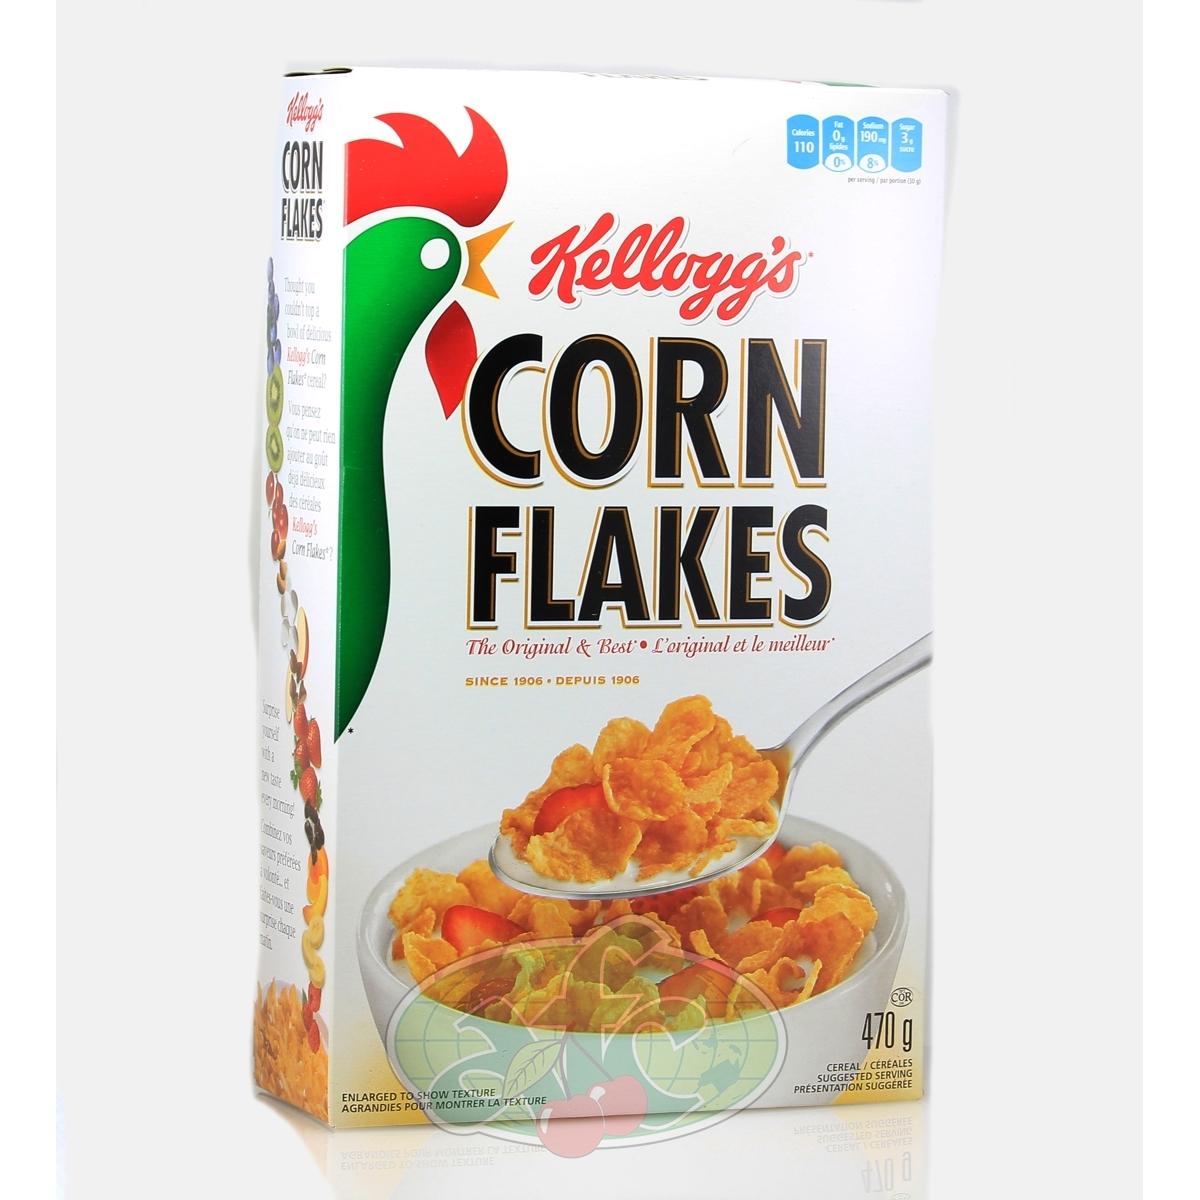 Kellogg's Corn Flakes Kellogg's Corn Flakes Flakes